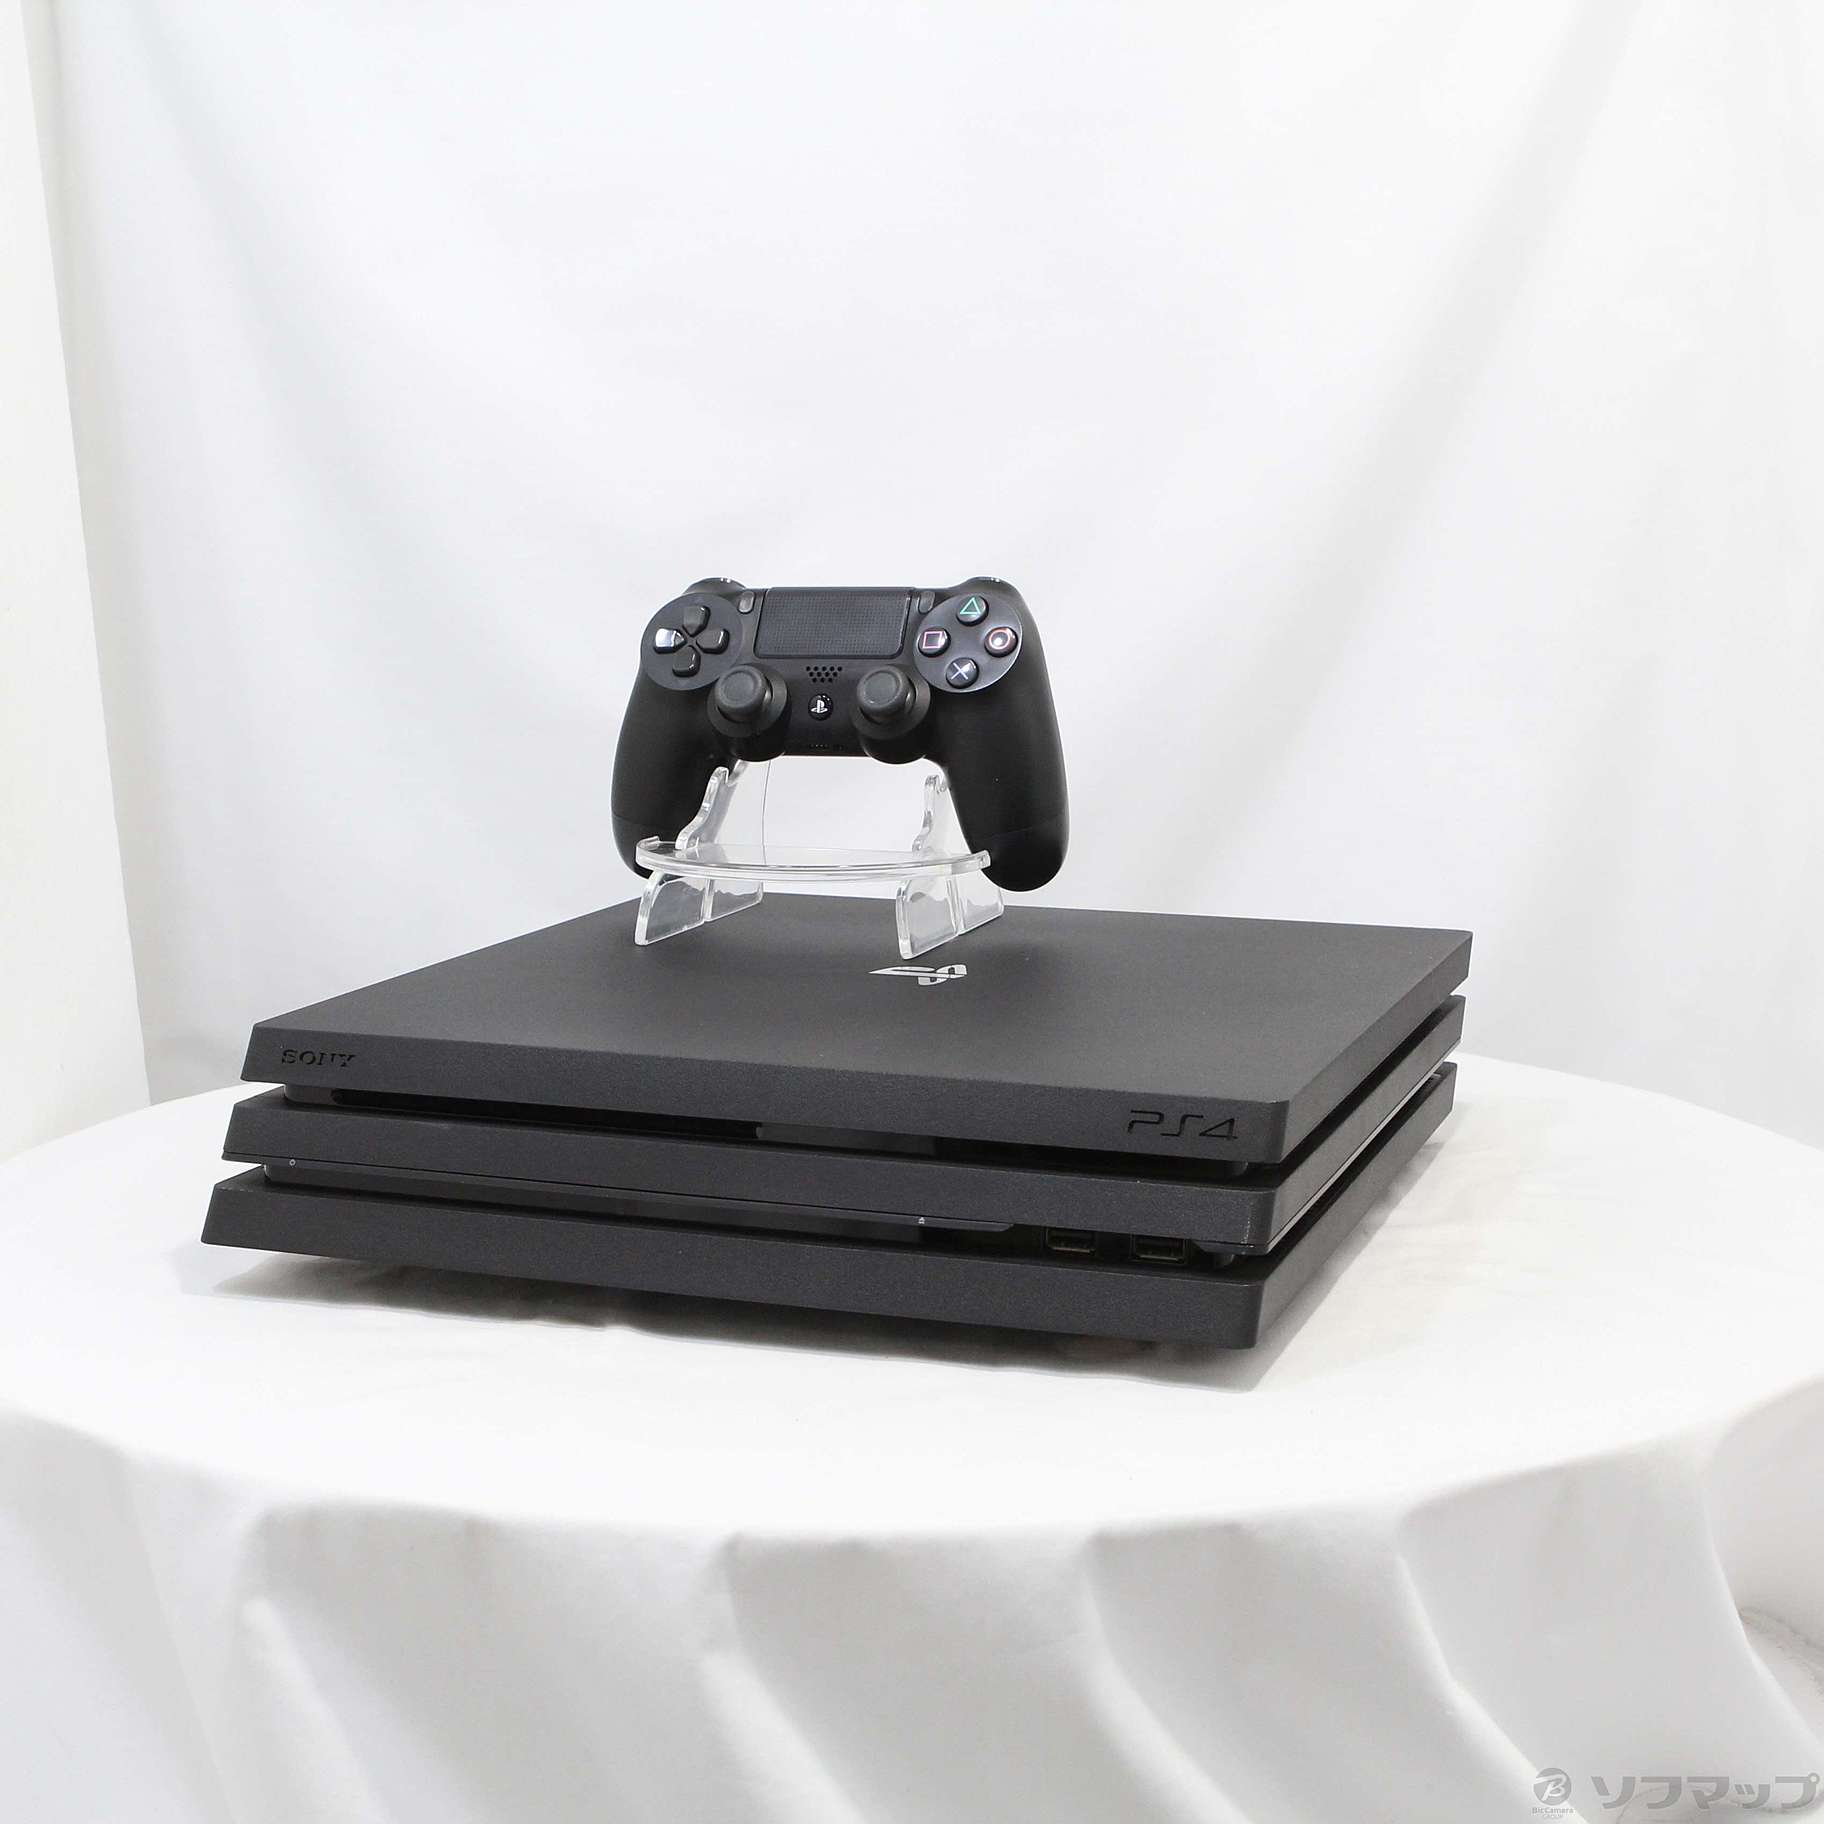 [美品] SONY PlayStation4 Pro 本体 CUH-7000BB